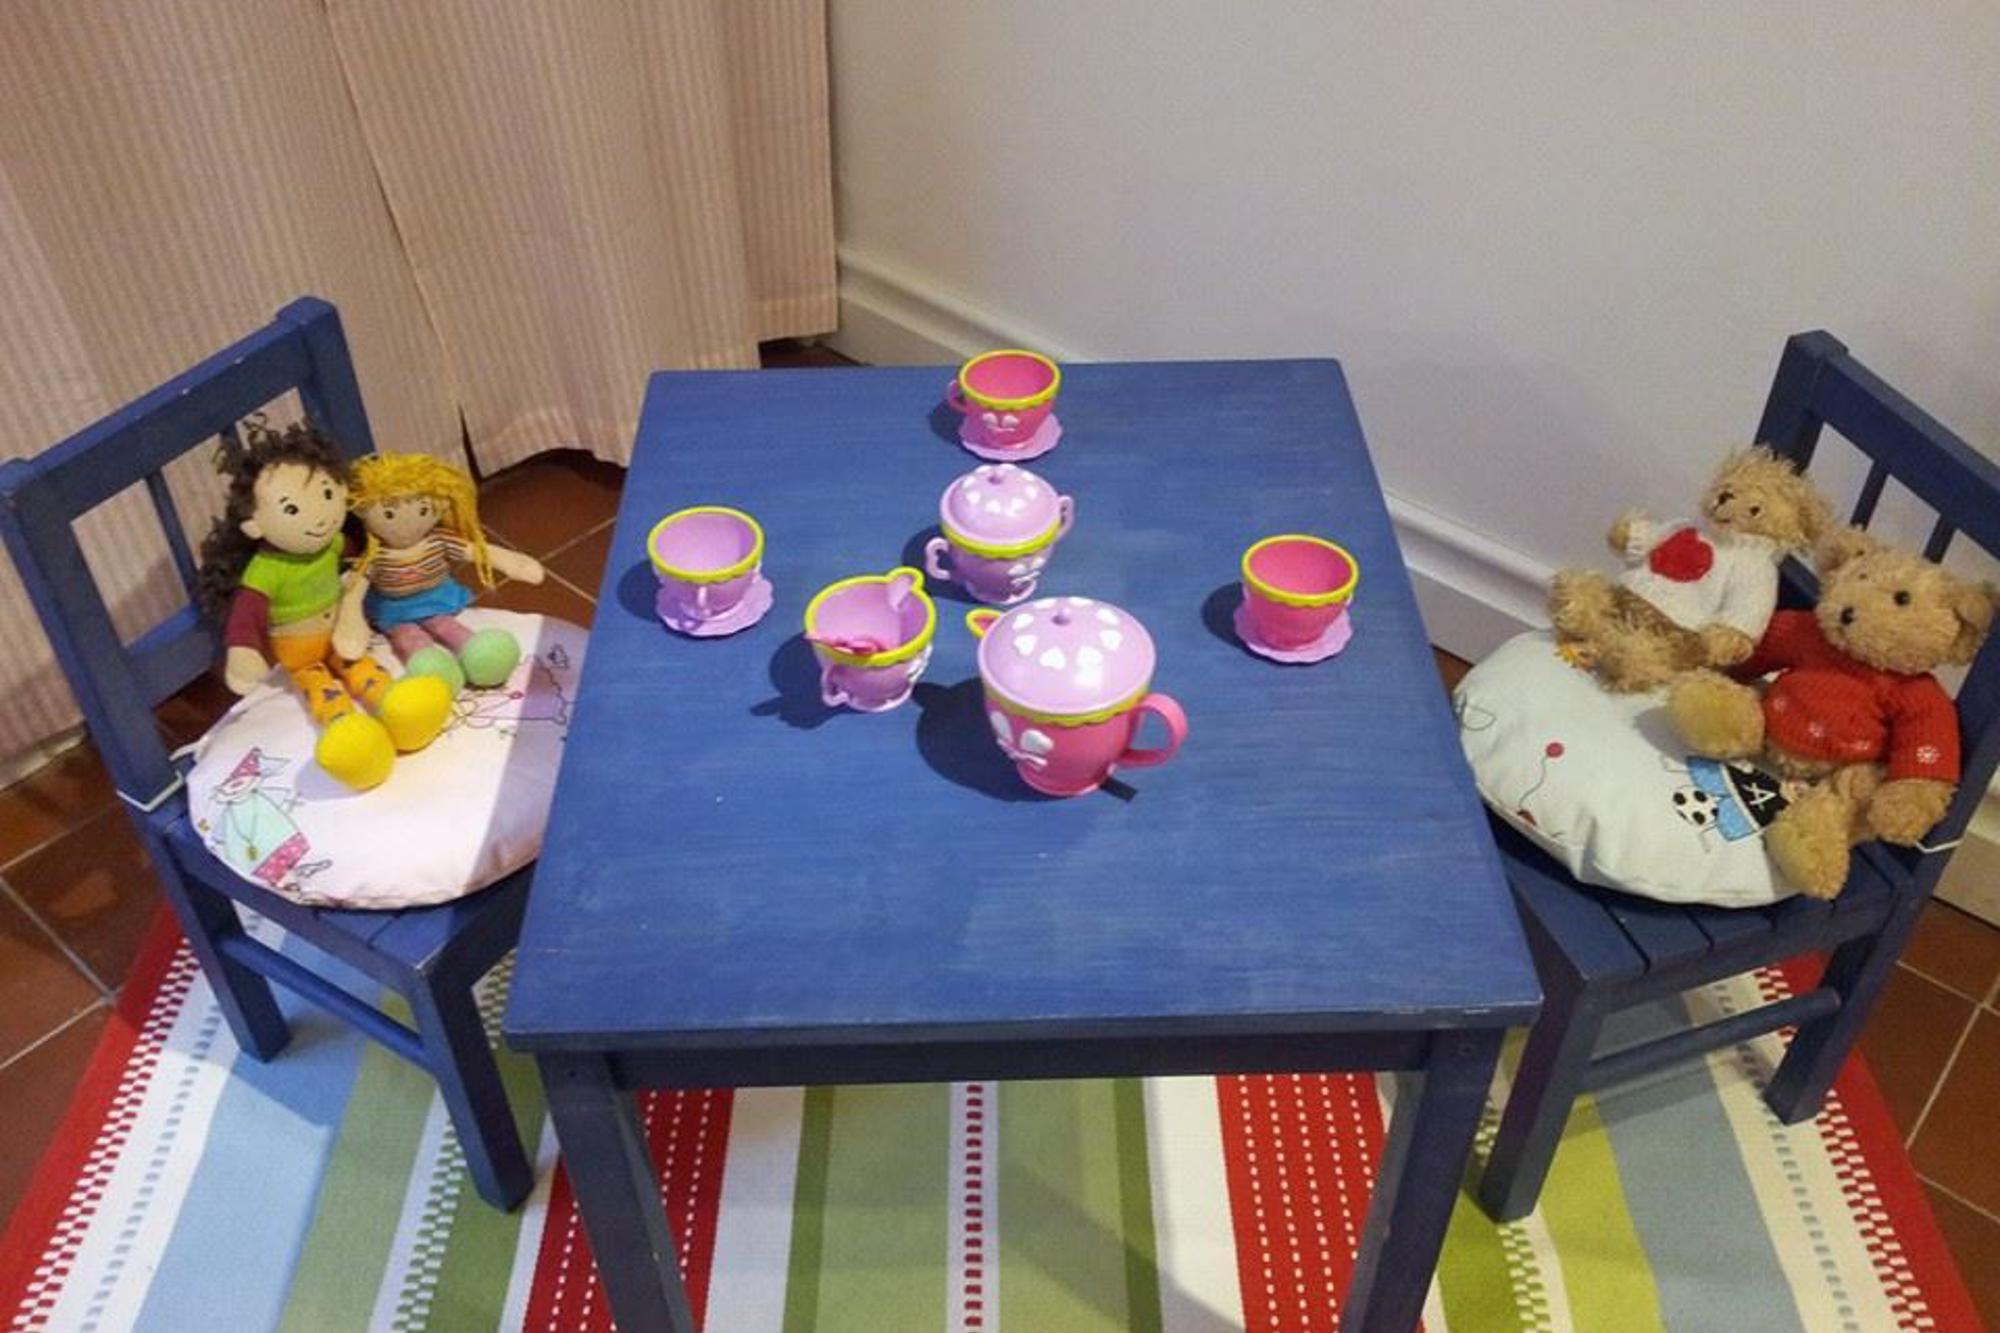 Ett litet bord med några leksakskoppar och en kanna. Vid bordet står det två stolar med gosedjur på.